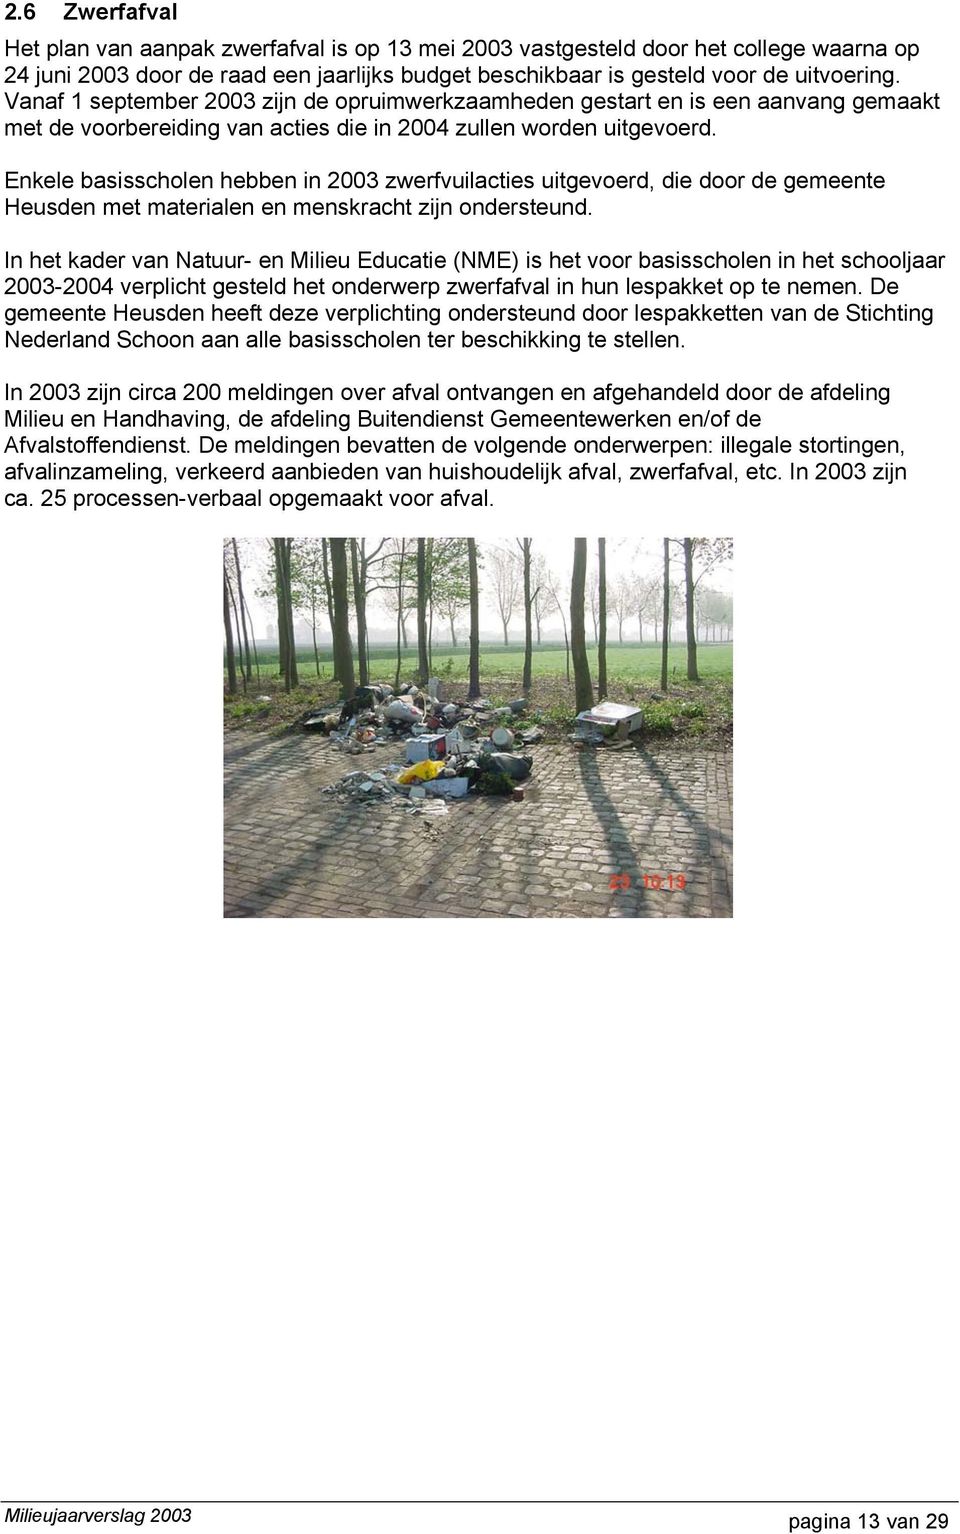 Enkele basisscholen hebben in 2003 zwerfvuilacties uitgevoerd, die door de gemeente Heusden met materialen en menskracht zijn ondersteund.